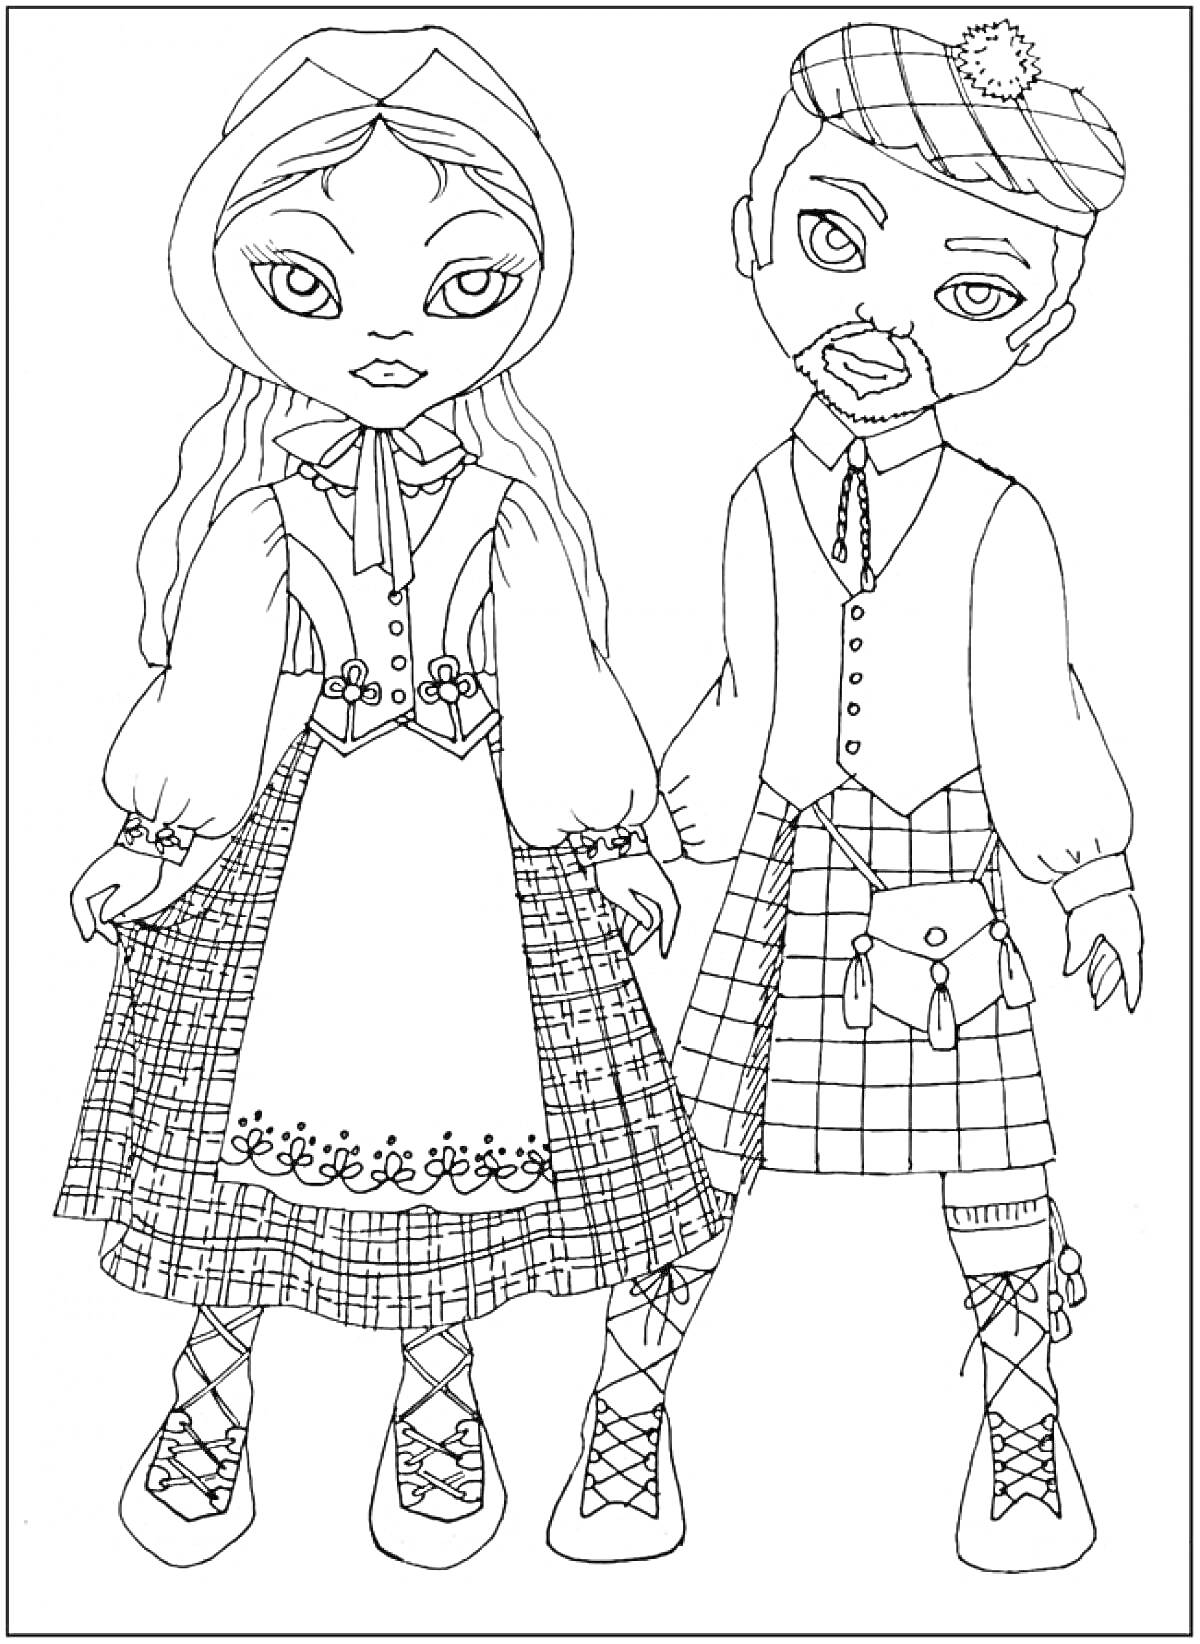 Дети в шотландских традиционных костюмах с клетчатыми юбками и беретами